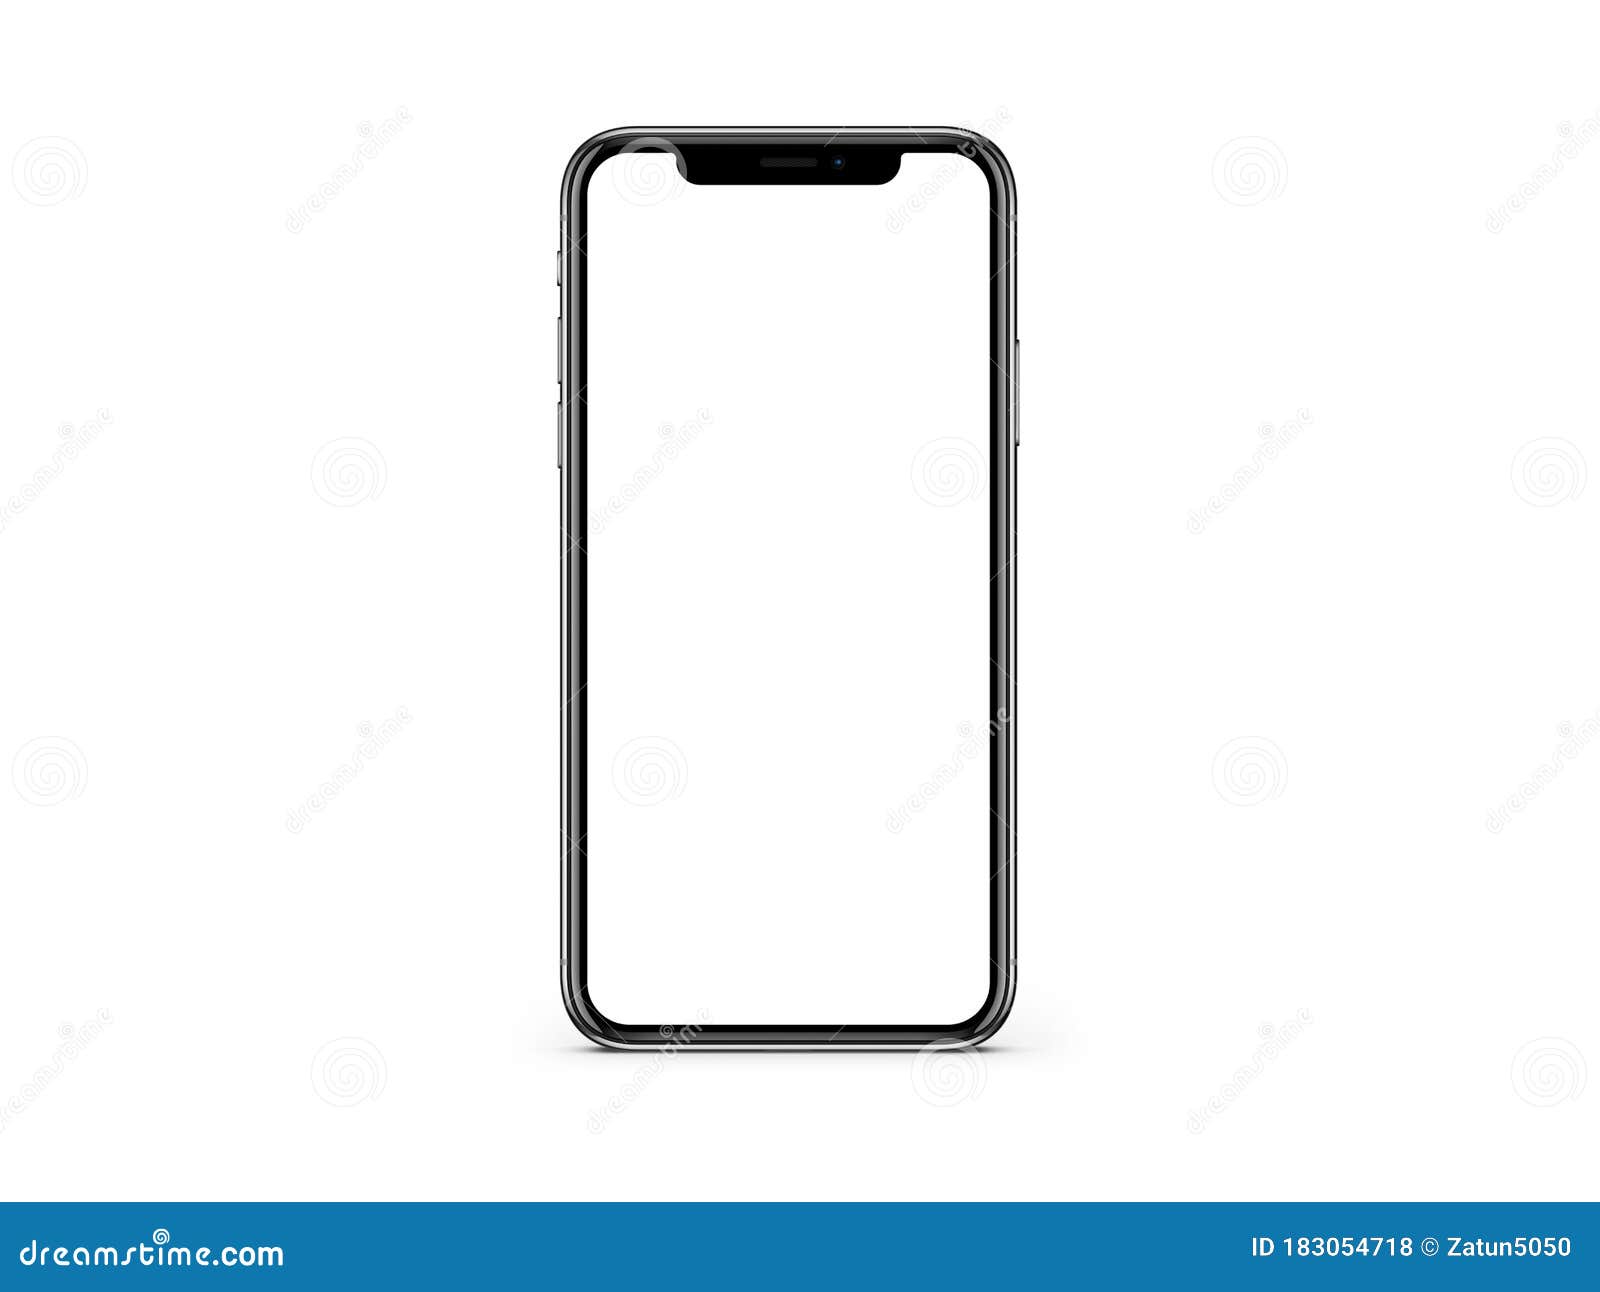 IPhone X Blank White Screen Mockup on White Color Background - màn hình trắng (white screen): Khám phá chi tiết màn hình trắng trống trơn của IPhone X Blank White Screen Mockup on White Color Background. Được tạo ra với độ chính xác tuyệt đối, màn hình này sẽ làm bạn cảm thấy thật sự kinh ngạc.